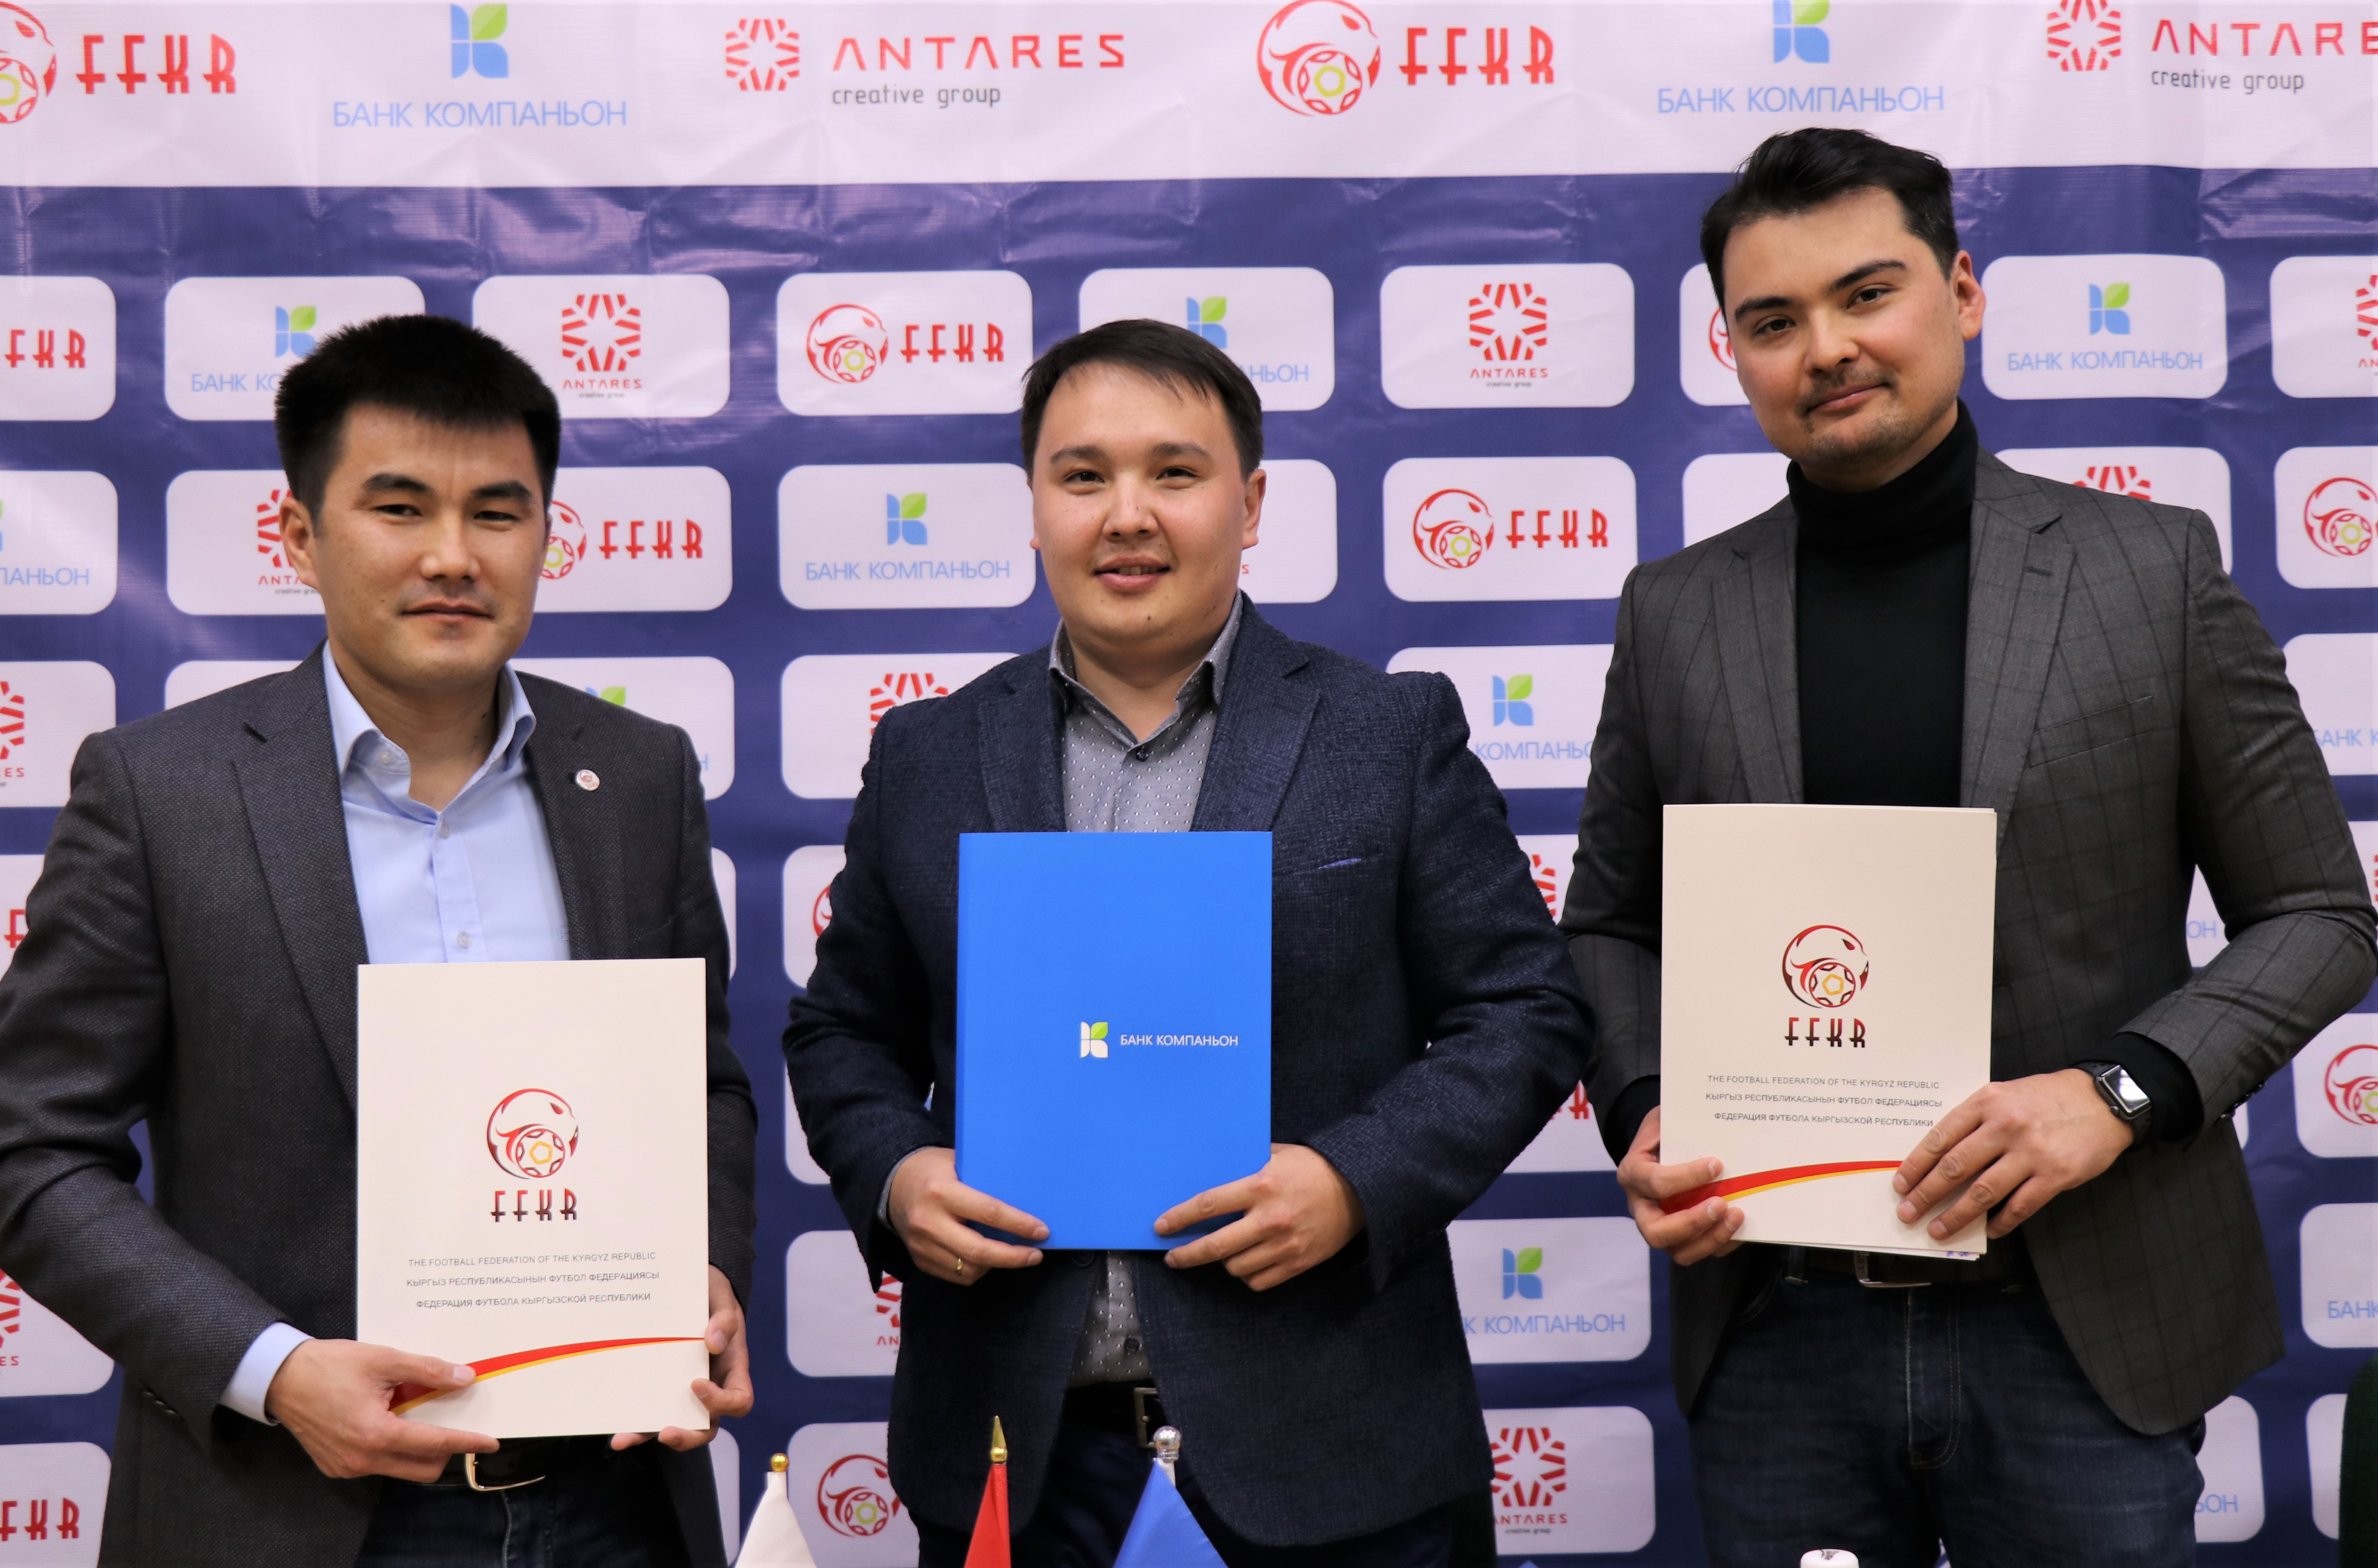 Тарыхты бирге жараталы: Компаньон Банкы 2019-жылдагы футбол боюнча Азия Кубогуна карата Кыргызстандагы медиа-кампаниянын Башкы өнөктөшү болду